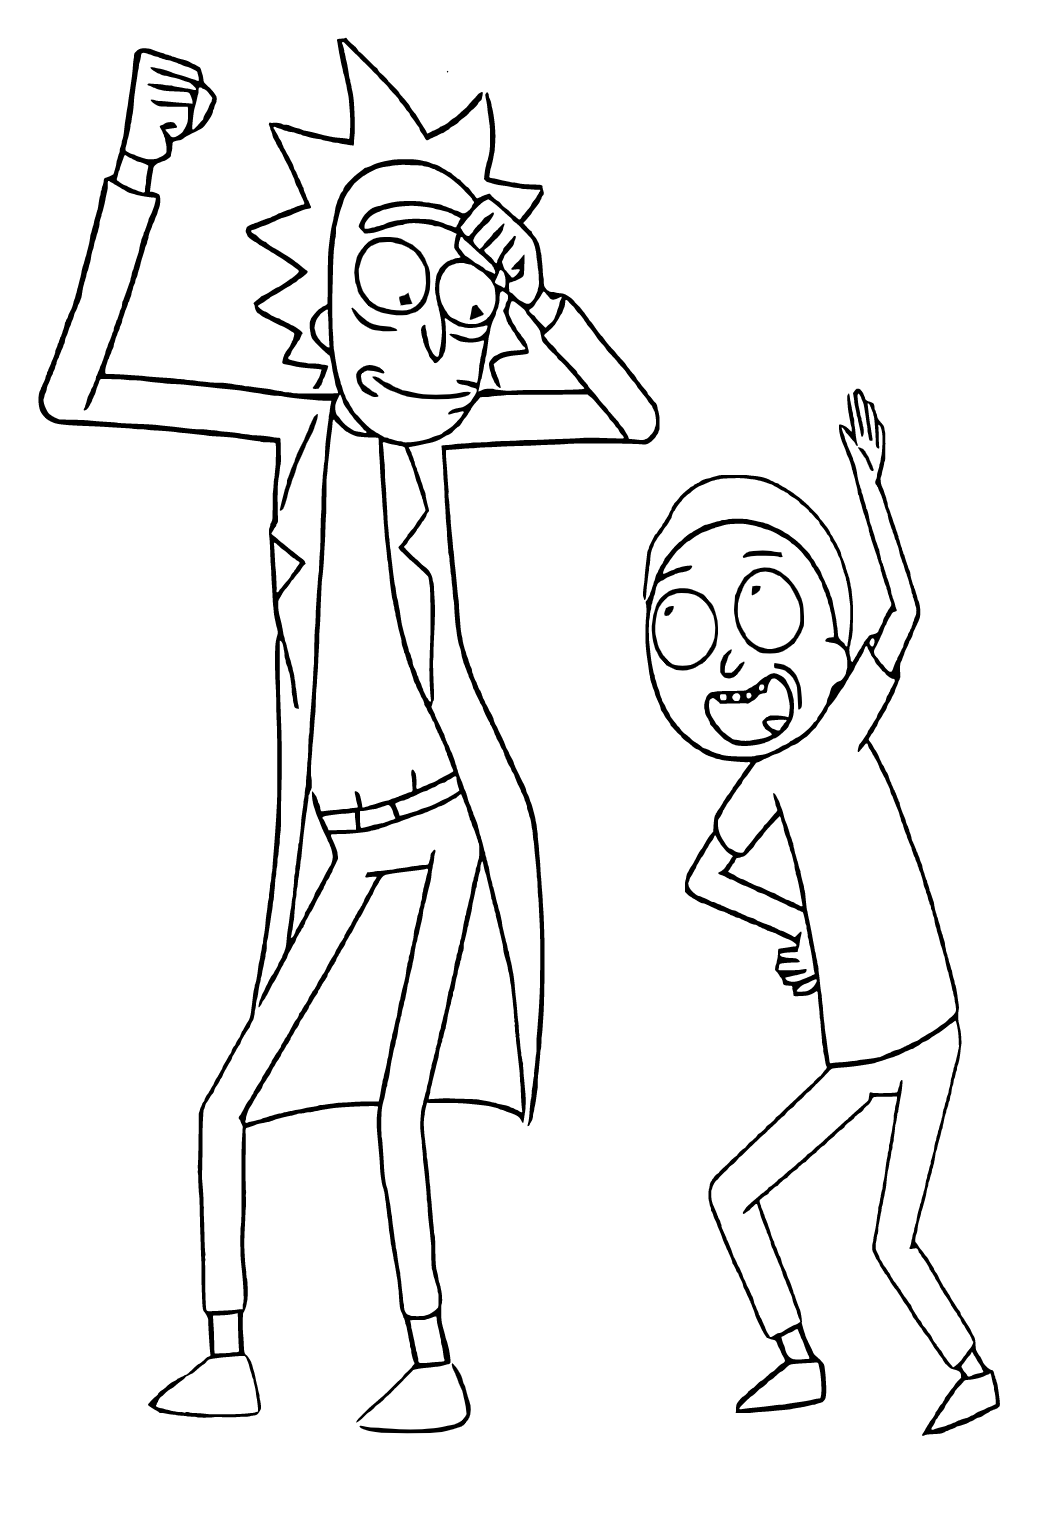 Rick och Morty